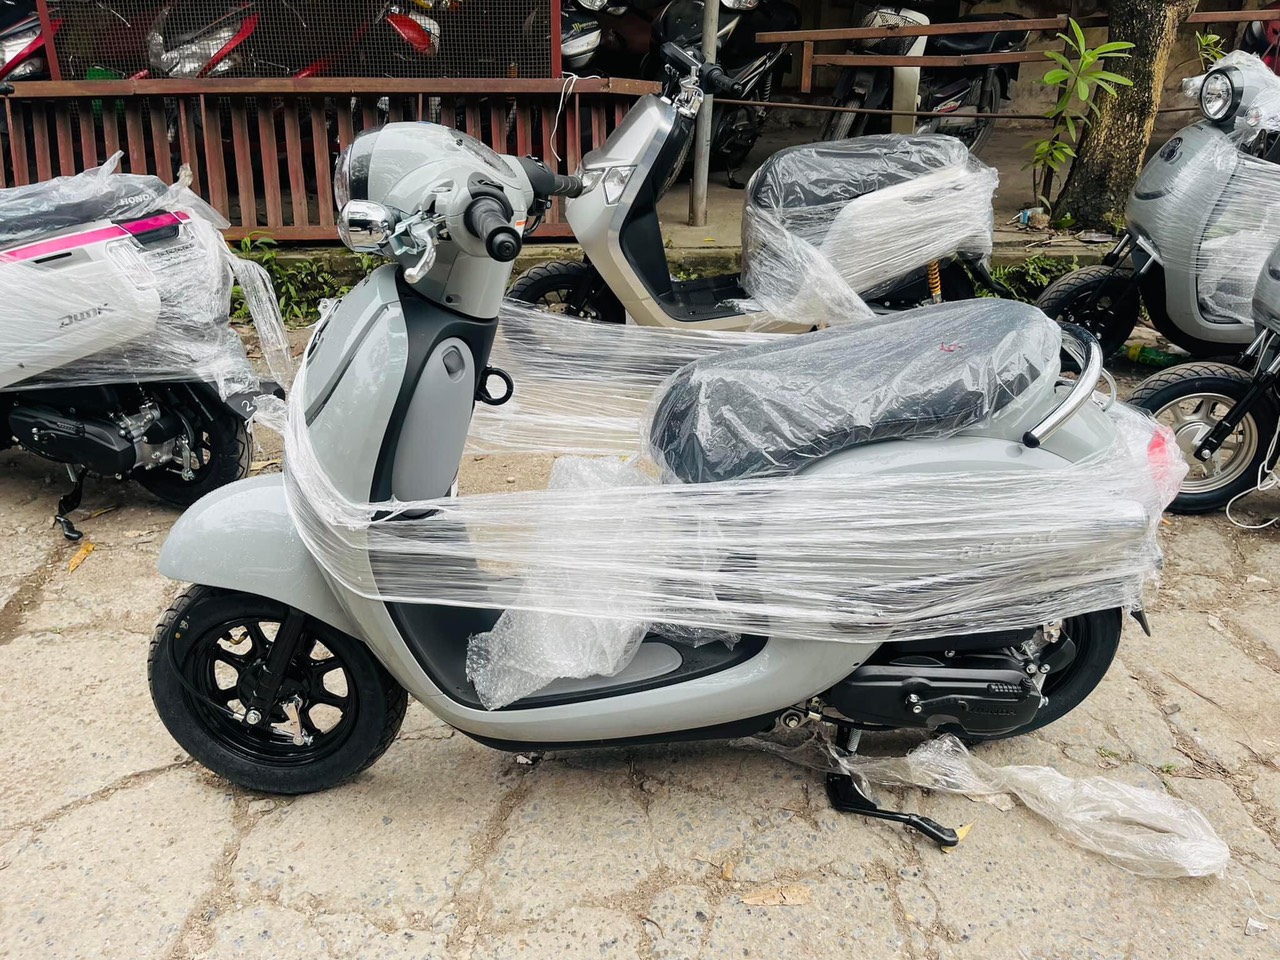 Địa chỉ bán xe ga 50cc Honda Giorno chính hãng giá rẻ tại Hà Nội